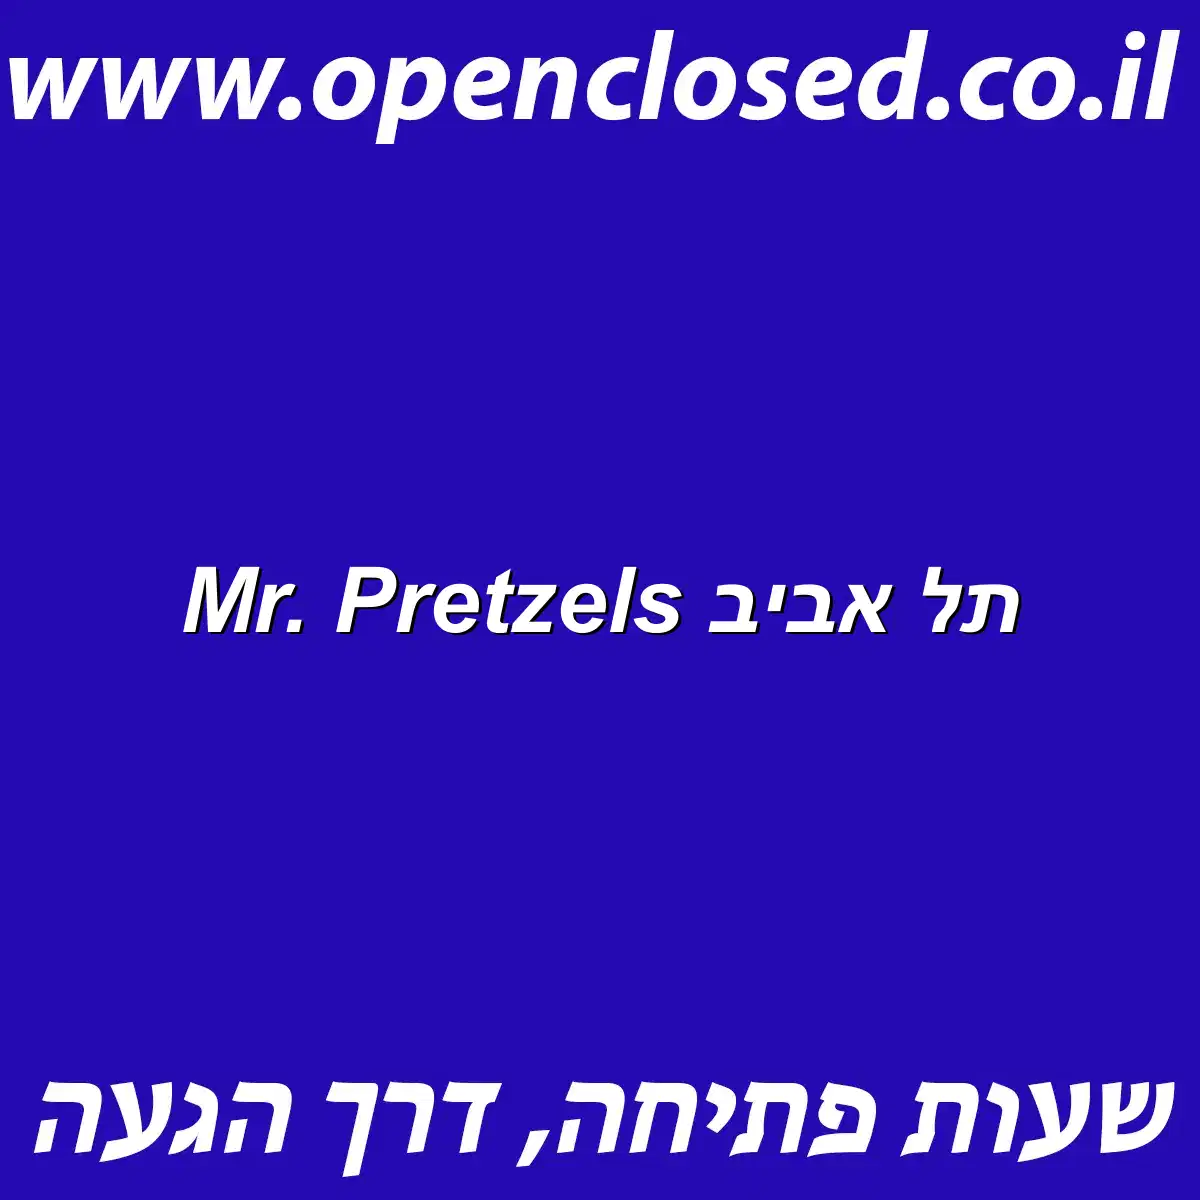 Mr. Pretzels תל אביב